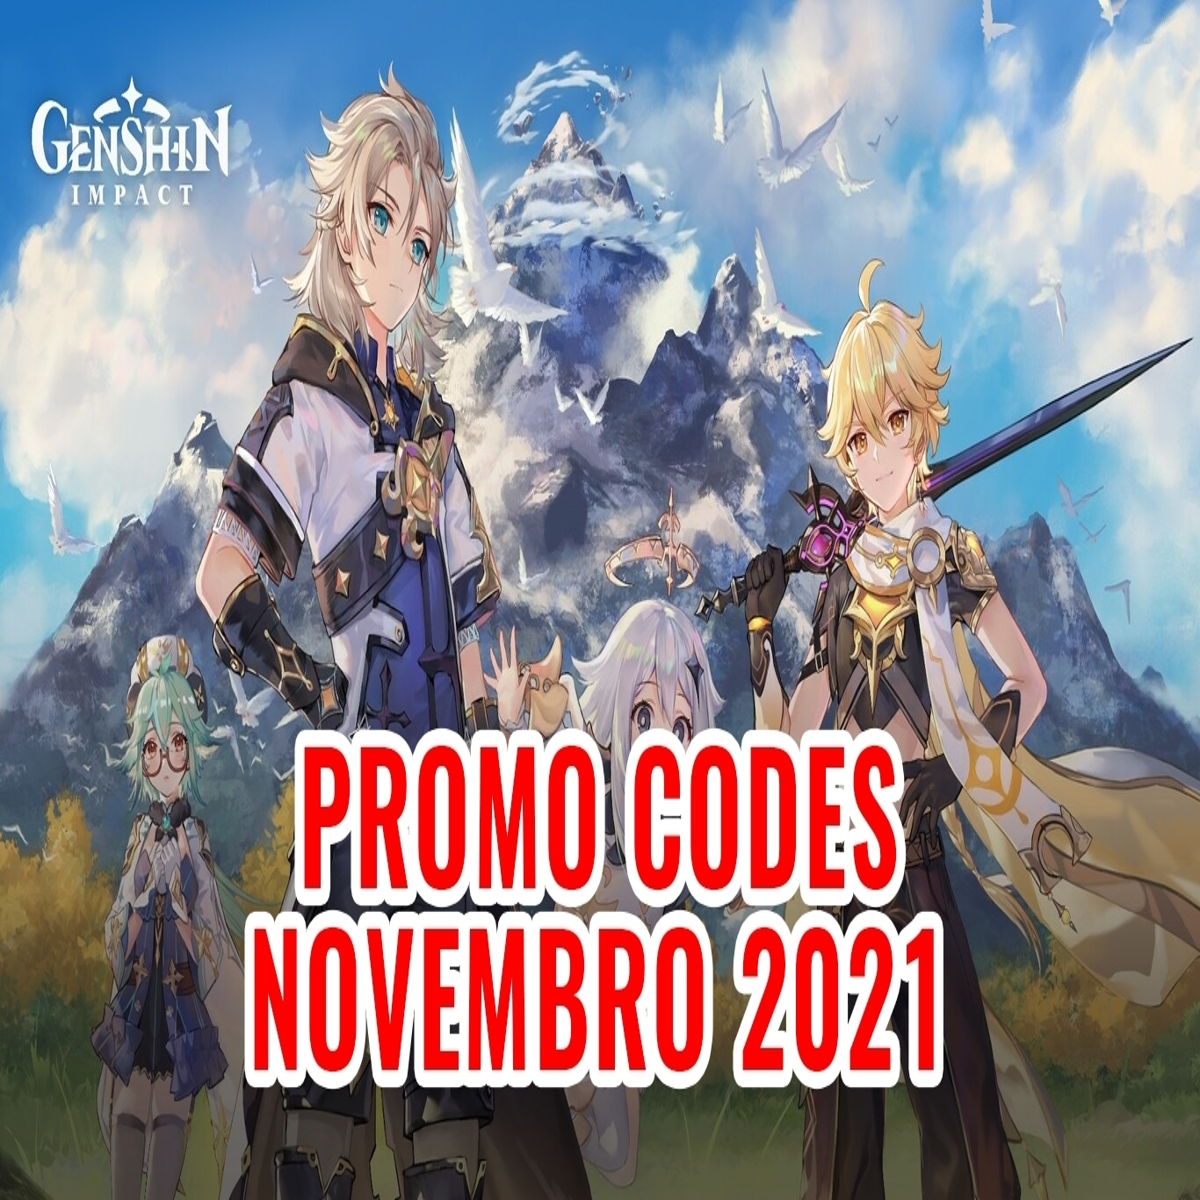 Genshin Impact - Promo Codes Novembro 2021 - Obtém itens e